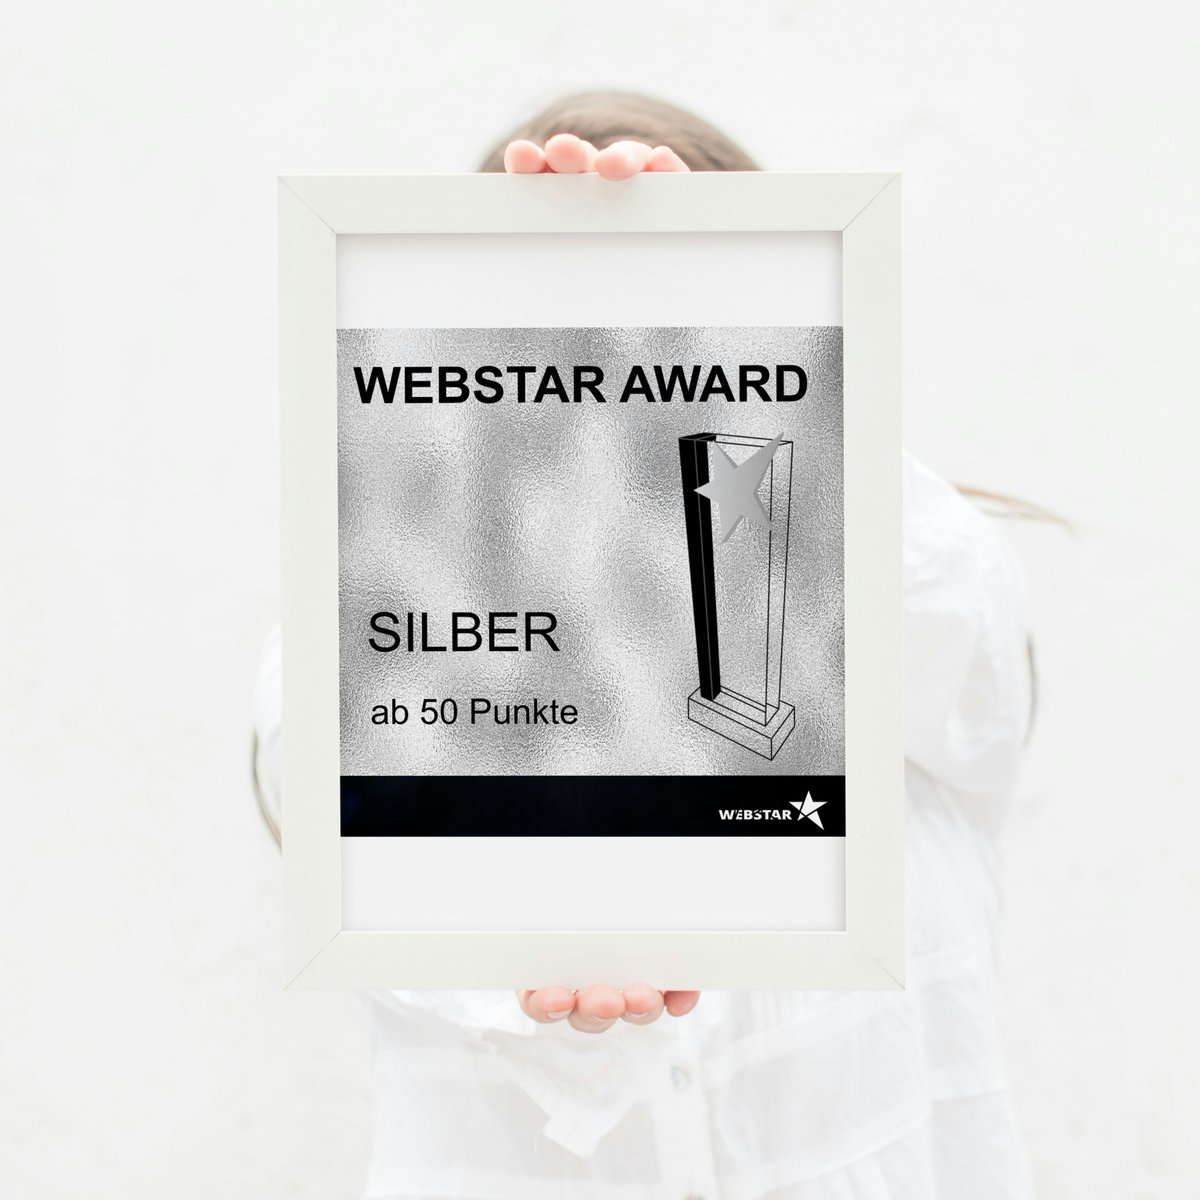 🌟 WEBSTAR AWARD 2024 ✨

Besuche webstar-award.de, um mehr über die Auszeichnungen zu erfahren und deine Nominierungen einzureichen! 🌐 webstar-award.de

#WebstarAward #DigitalerRuhm #Auszeichnung #GOLD #SILBER #BRONZE #Webstar2024  #OnlineAuszeichnung #WebAwards